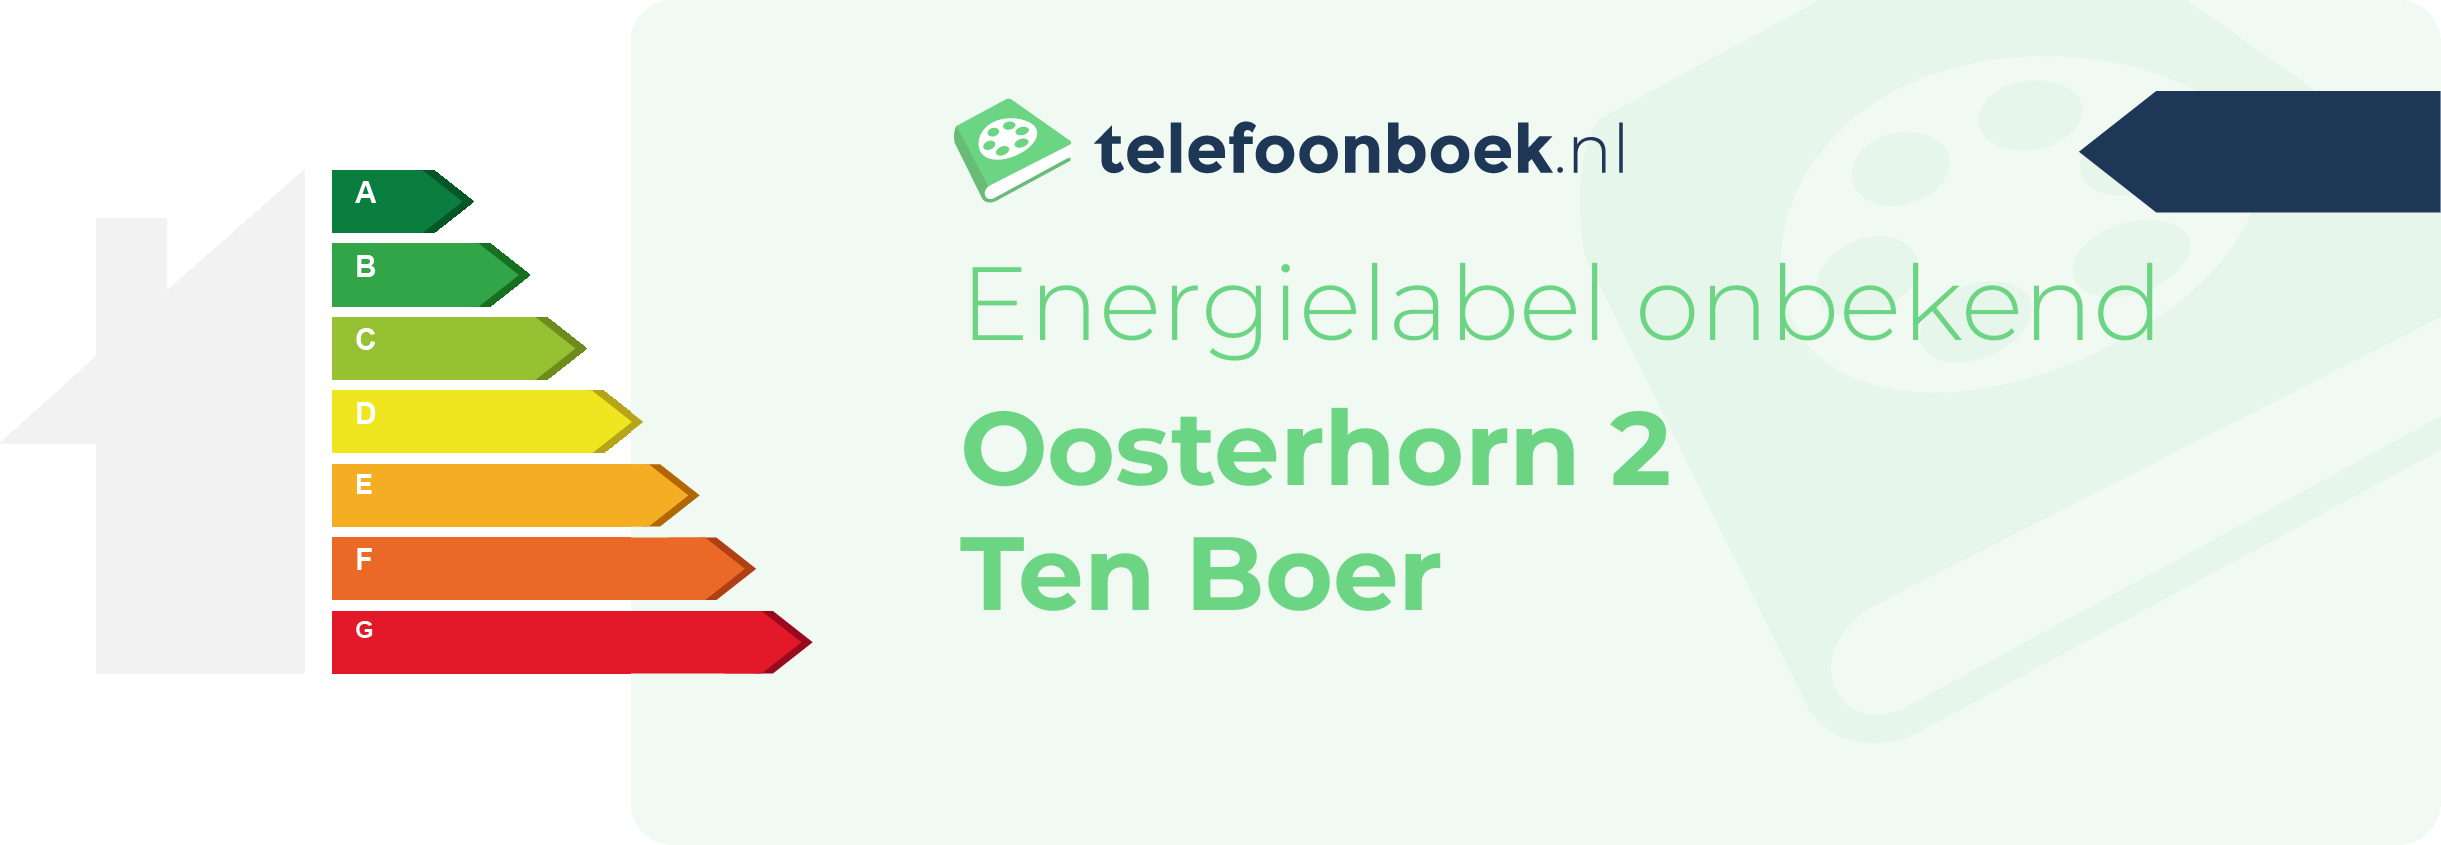 Energielabel Oosterhorn 2 Ten Boer